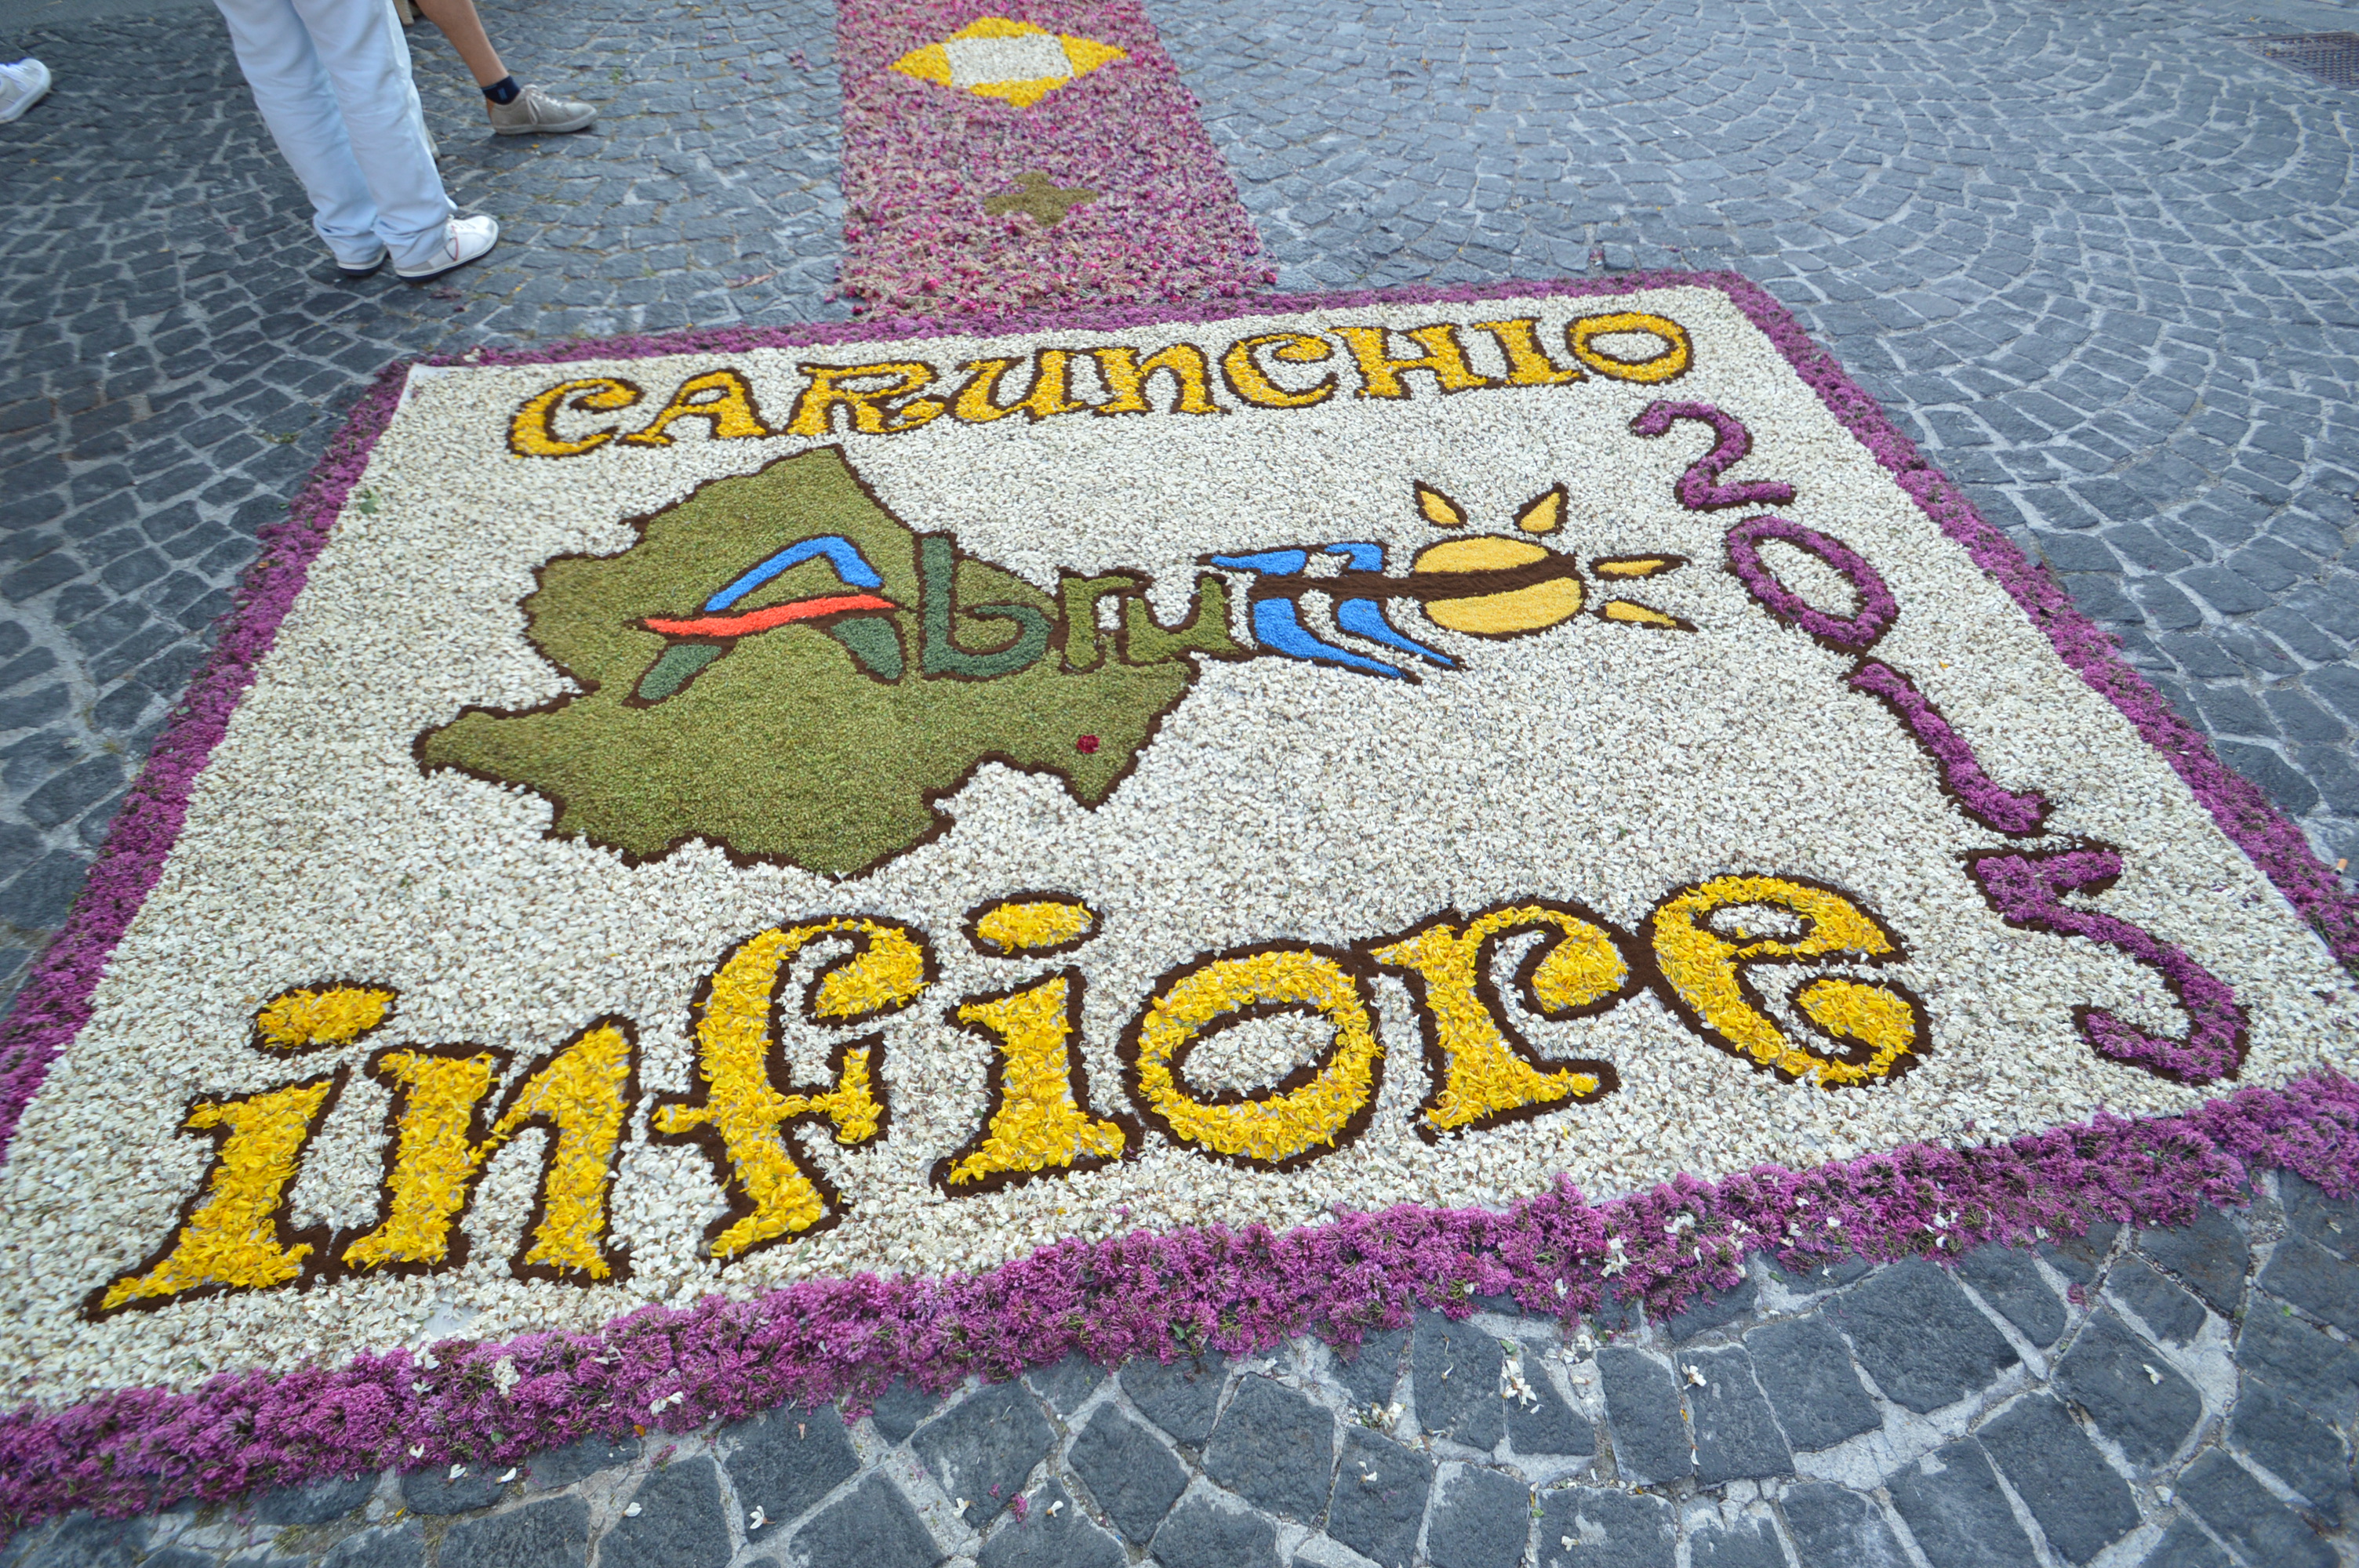 Infiorata festival in Carunchio, Abruzzo, Italy